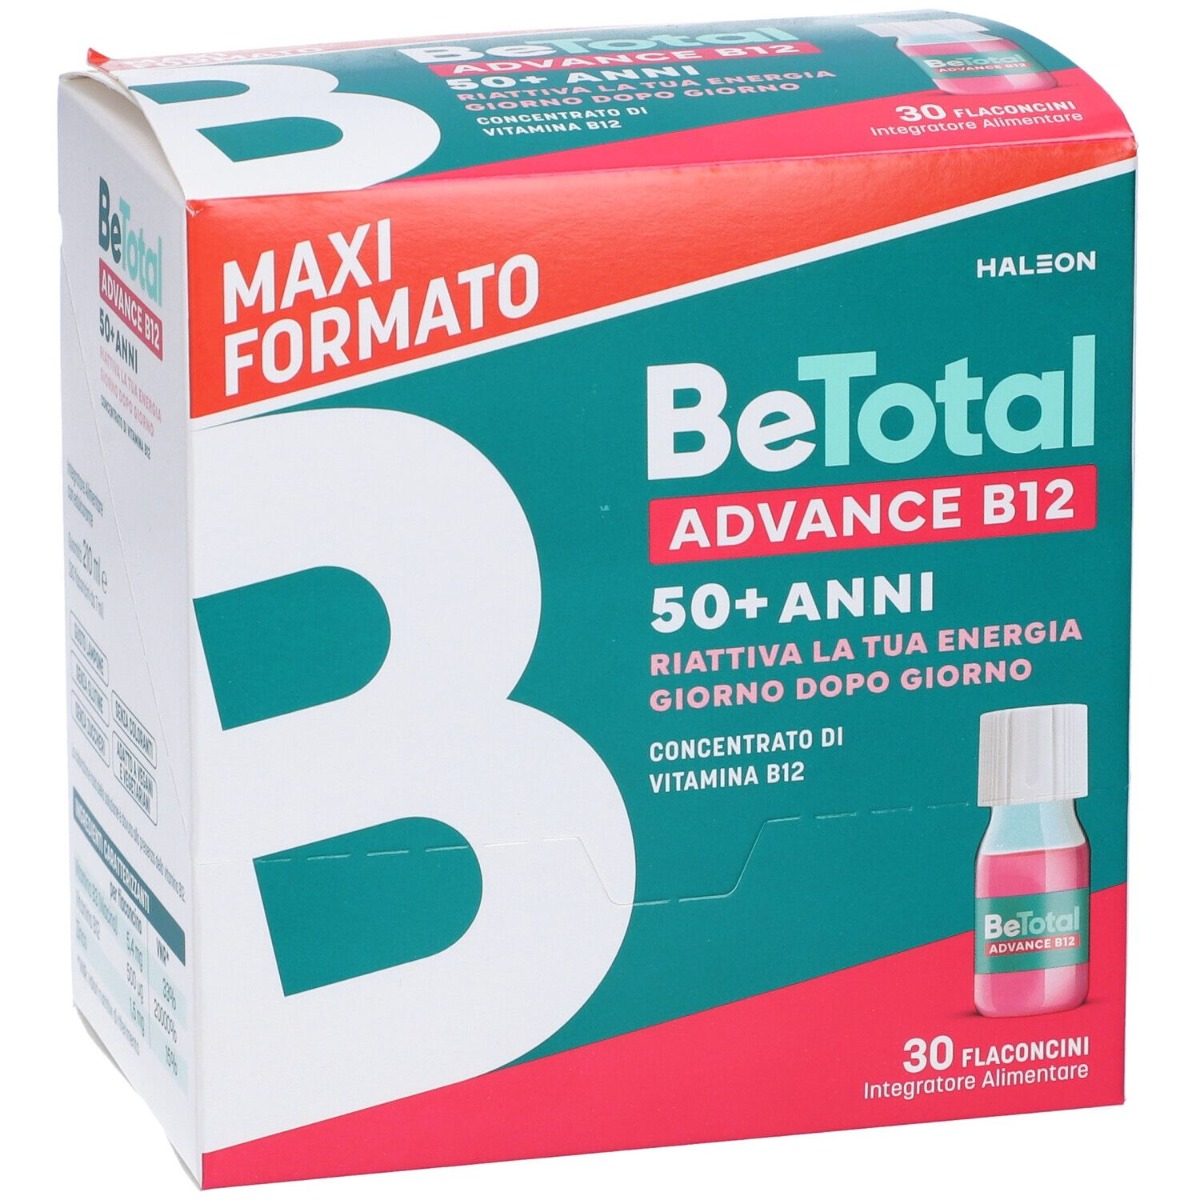 BeTotal Advance B12 50+ anni Maxi Formato 30 flaconcini a solo € 28,69 -   - Gli Specialisti del Benessere